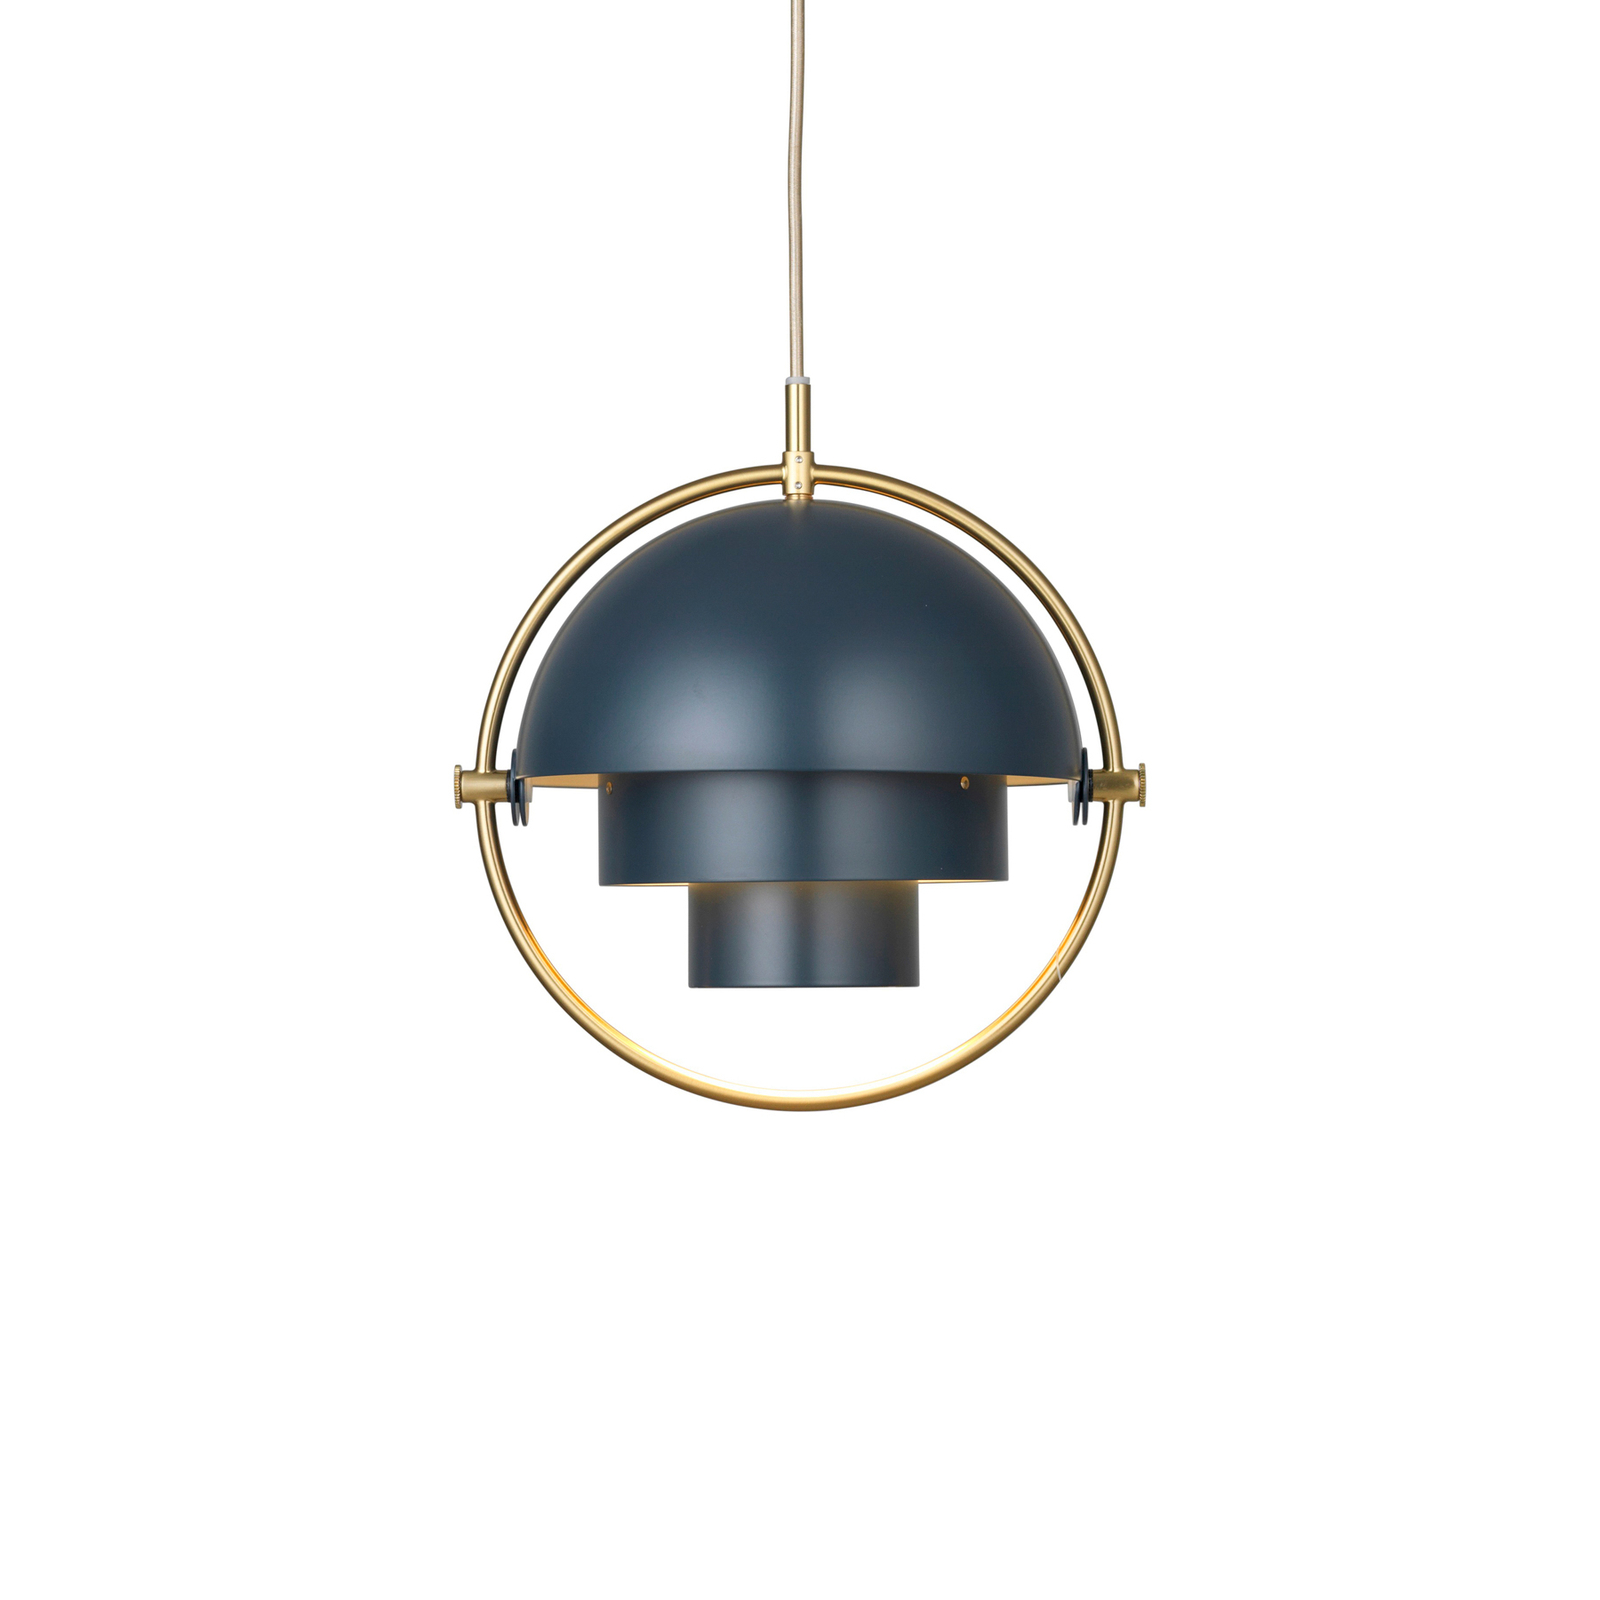 Gubi hanglamp Lite, Ø 27 cm, messing/donkerblauw